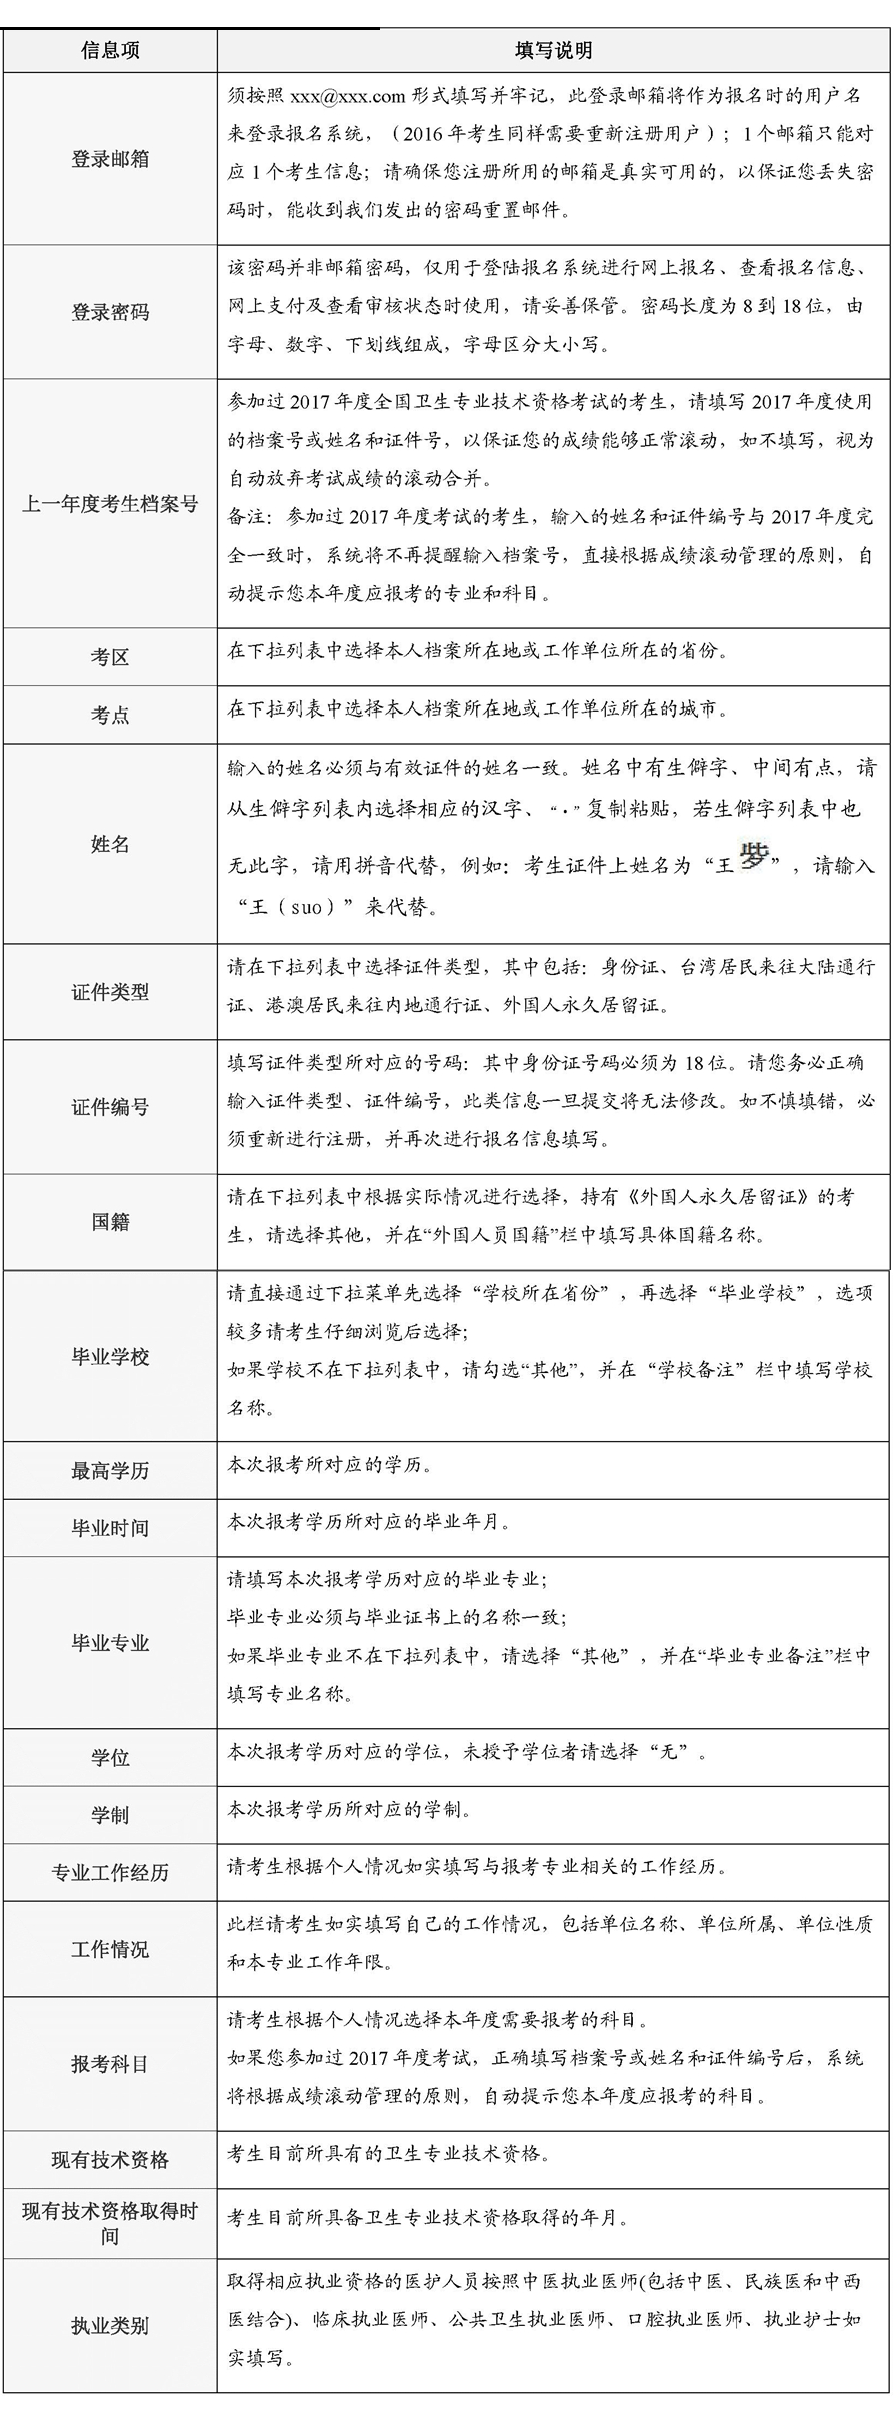 中国卫生人才网发布:2018年卫生资格考试报名